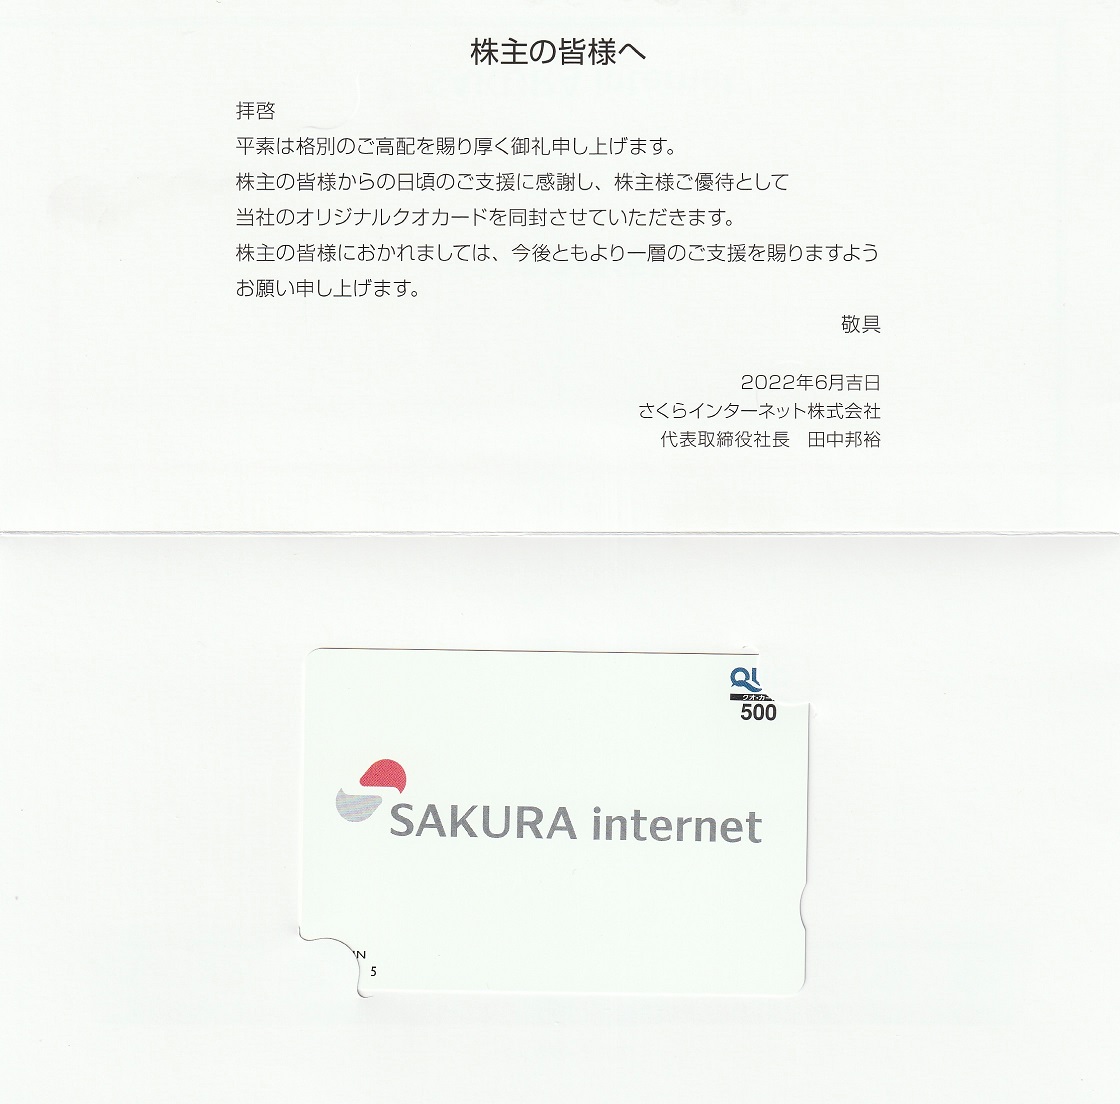 【3月優待】【9月優待】さくらインターネット株式会社からQUOカードが到着しました